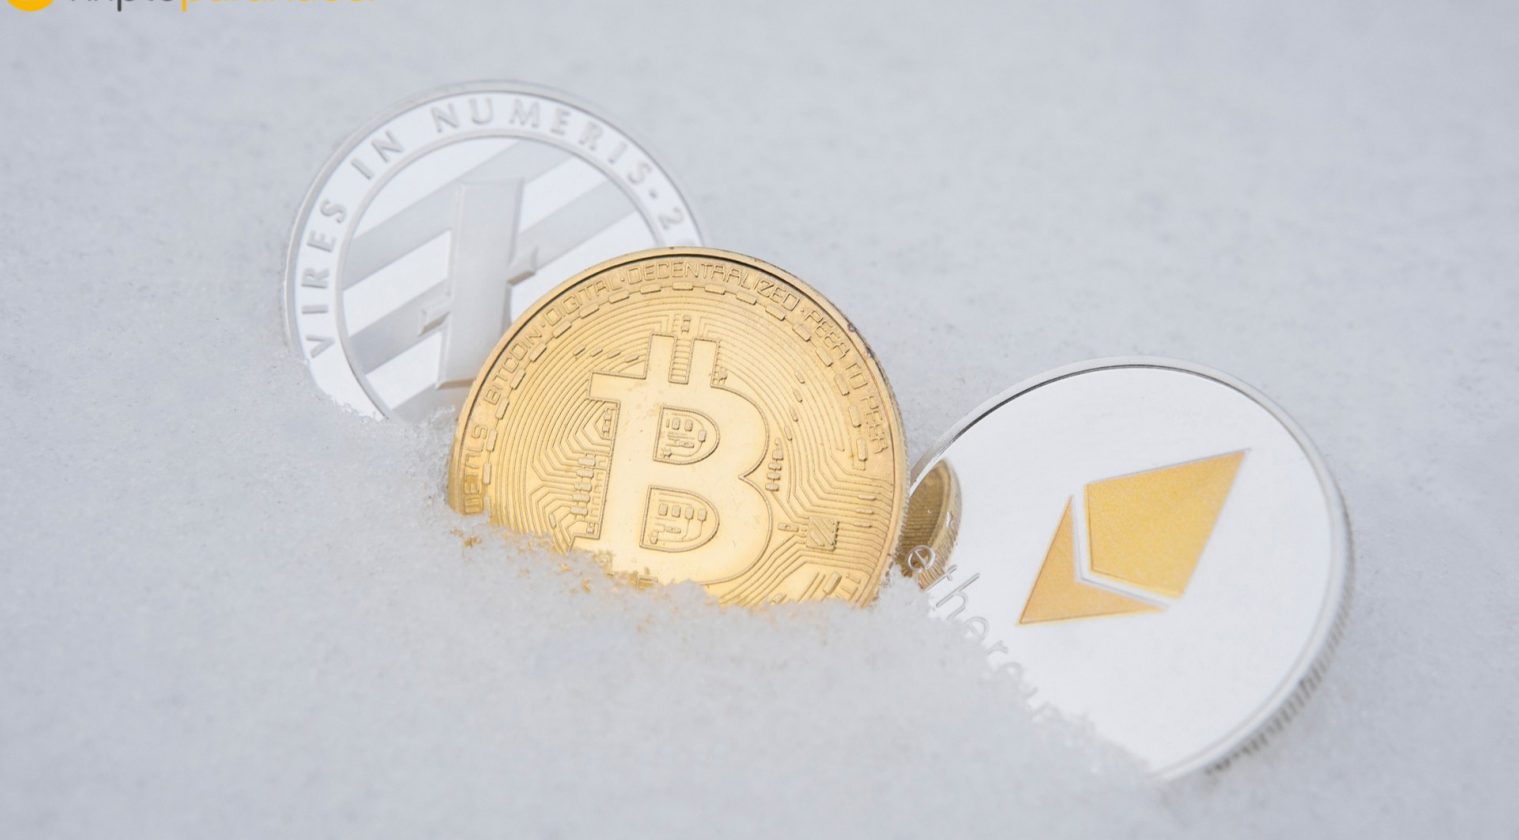 Tone Vays: “Bitcoin tahminim yanlış olmasını dilediğim durumlardan biri.”